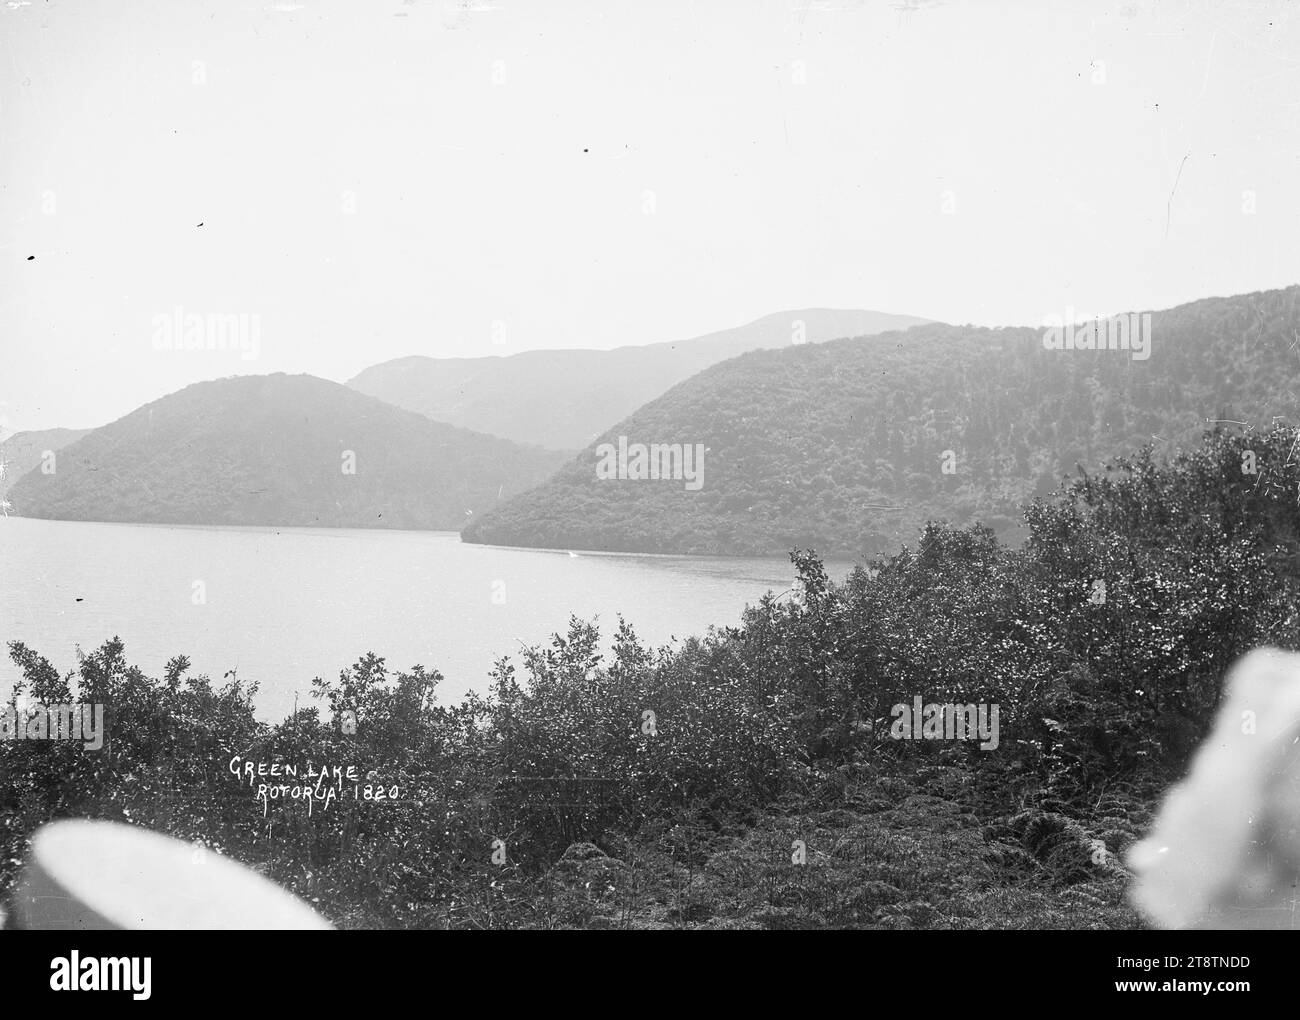 Green Lake, Rotorua, vue sur le lac Rotokakahi, connu sous le nom de Green Lake, prise d'un point de vue sur une colline au-dessus du lac. au début des années 1900 Banque D'Images